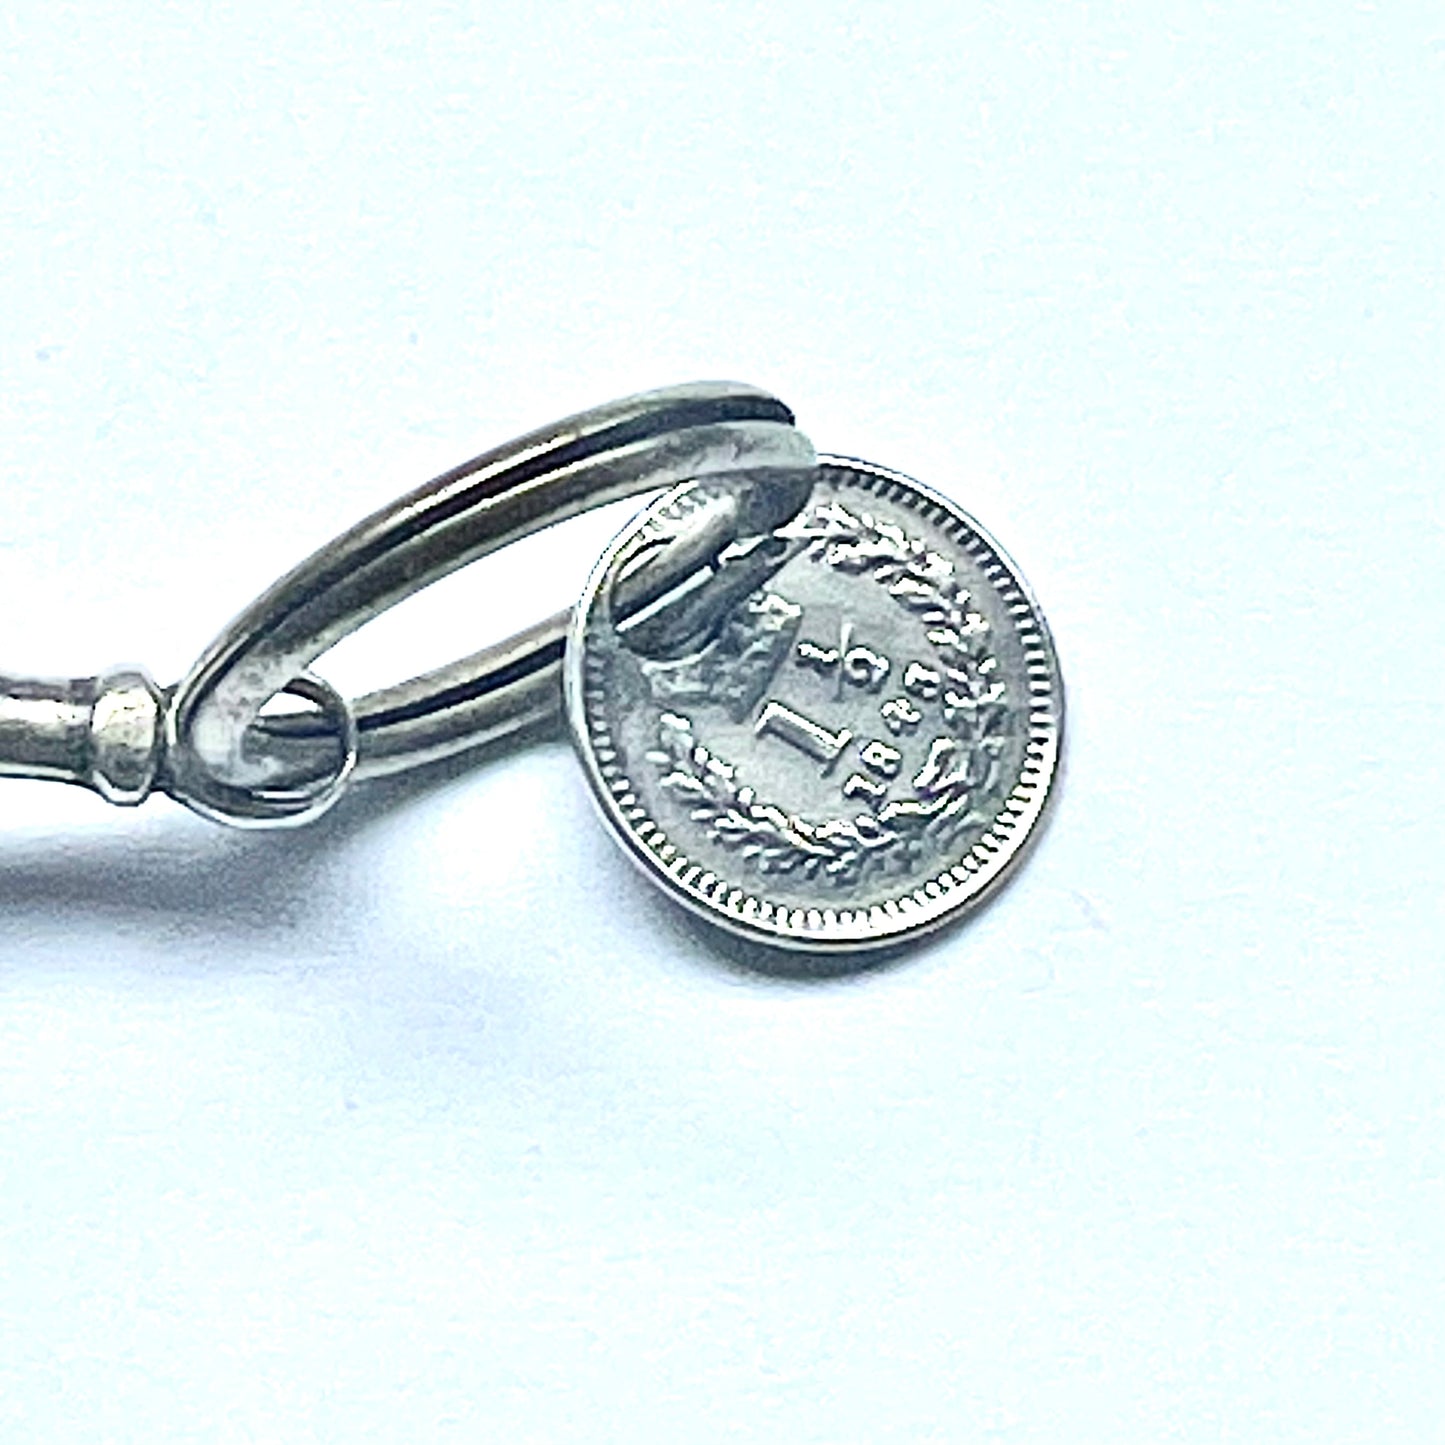 古董英国纯银印章表链，约 19 世纪上半叶，配有纯银 1845 便士吊饰